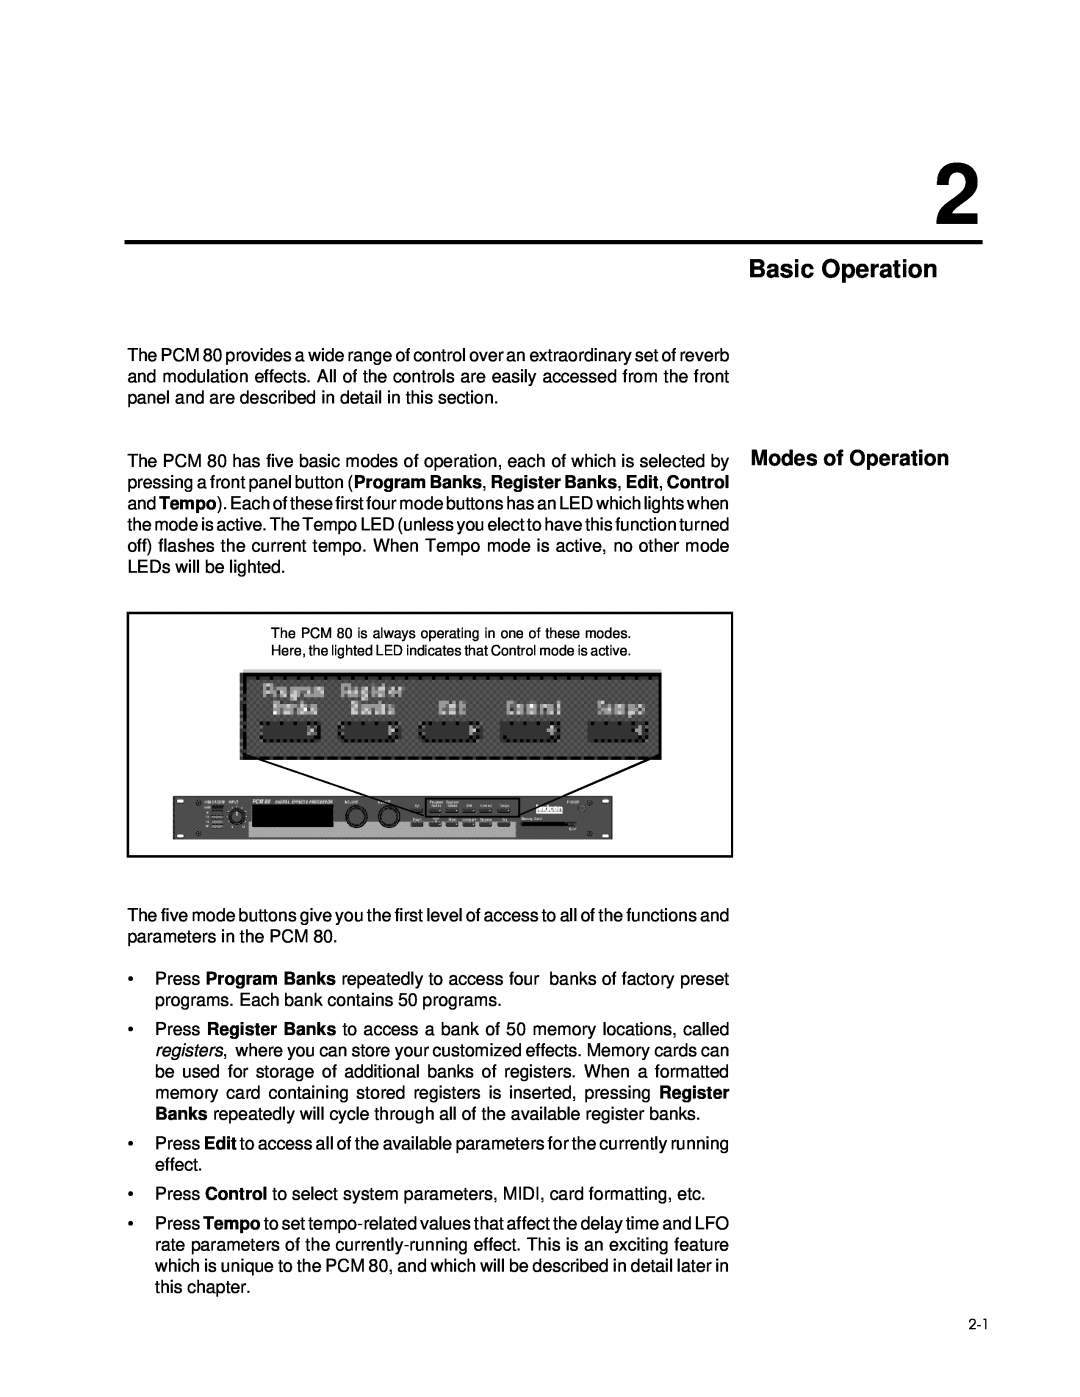 Lexicon PCM 80 manual Basic Operation 